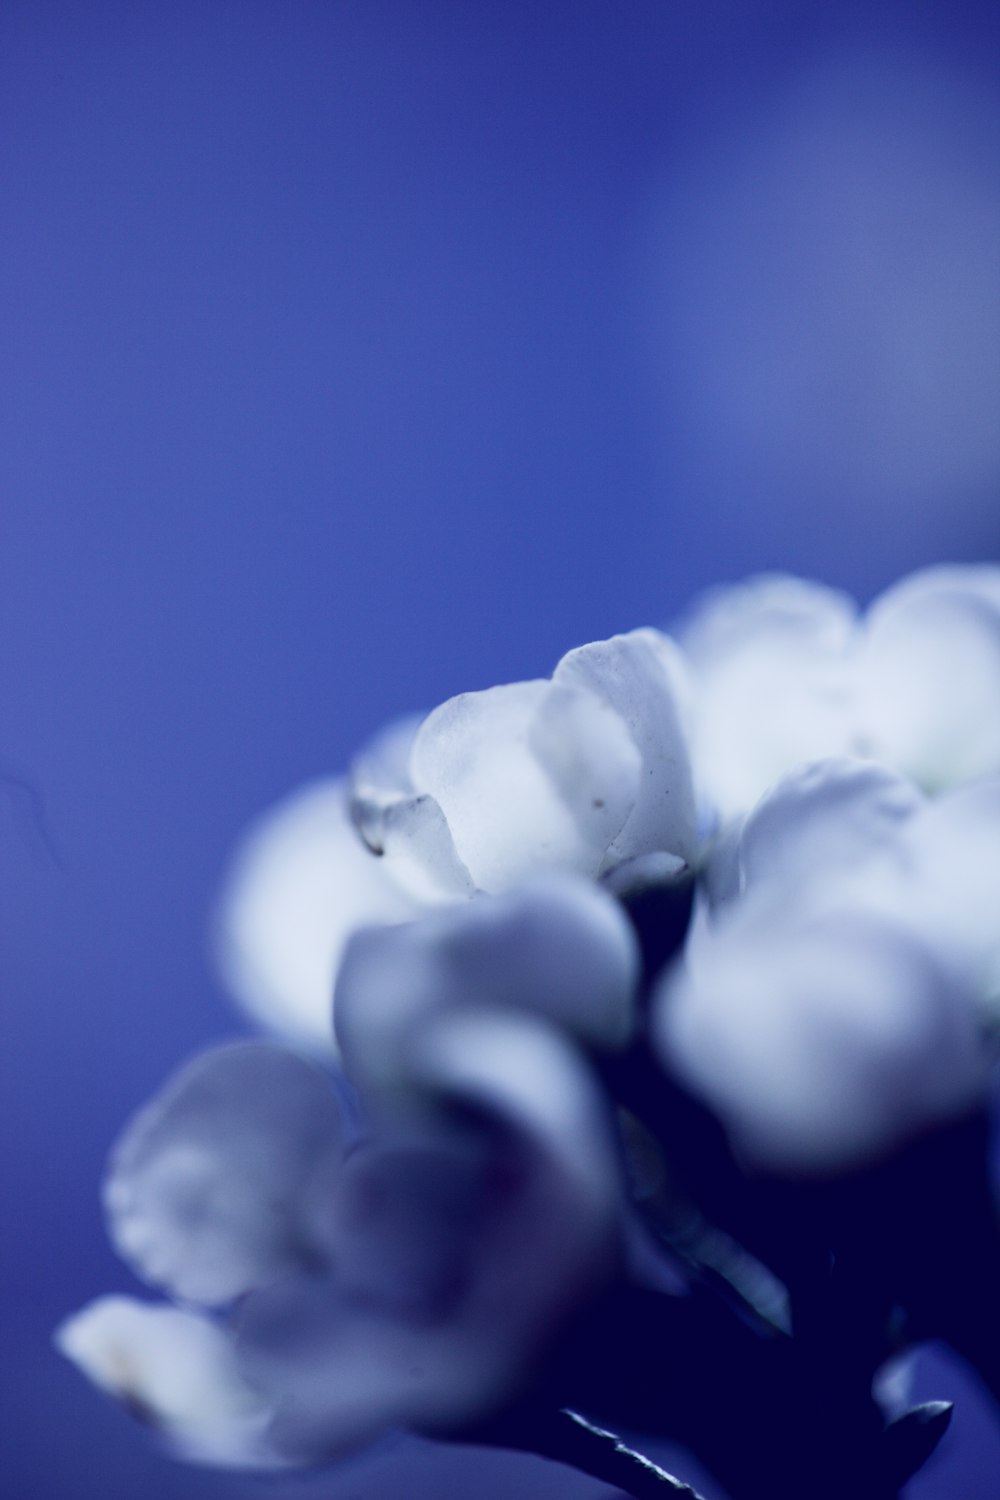 Fotografia a fuoco selettiva del fiore di petalo bianco